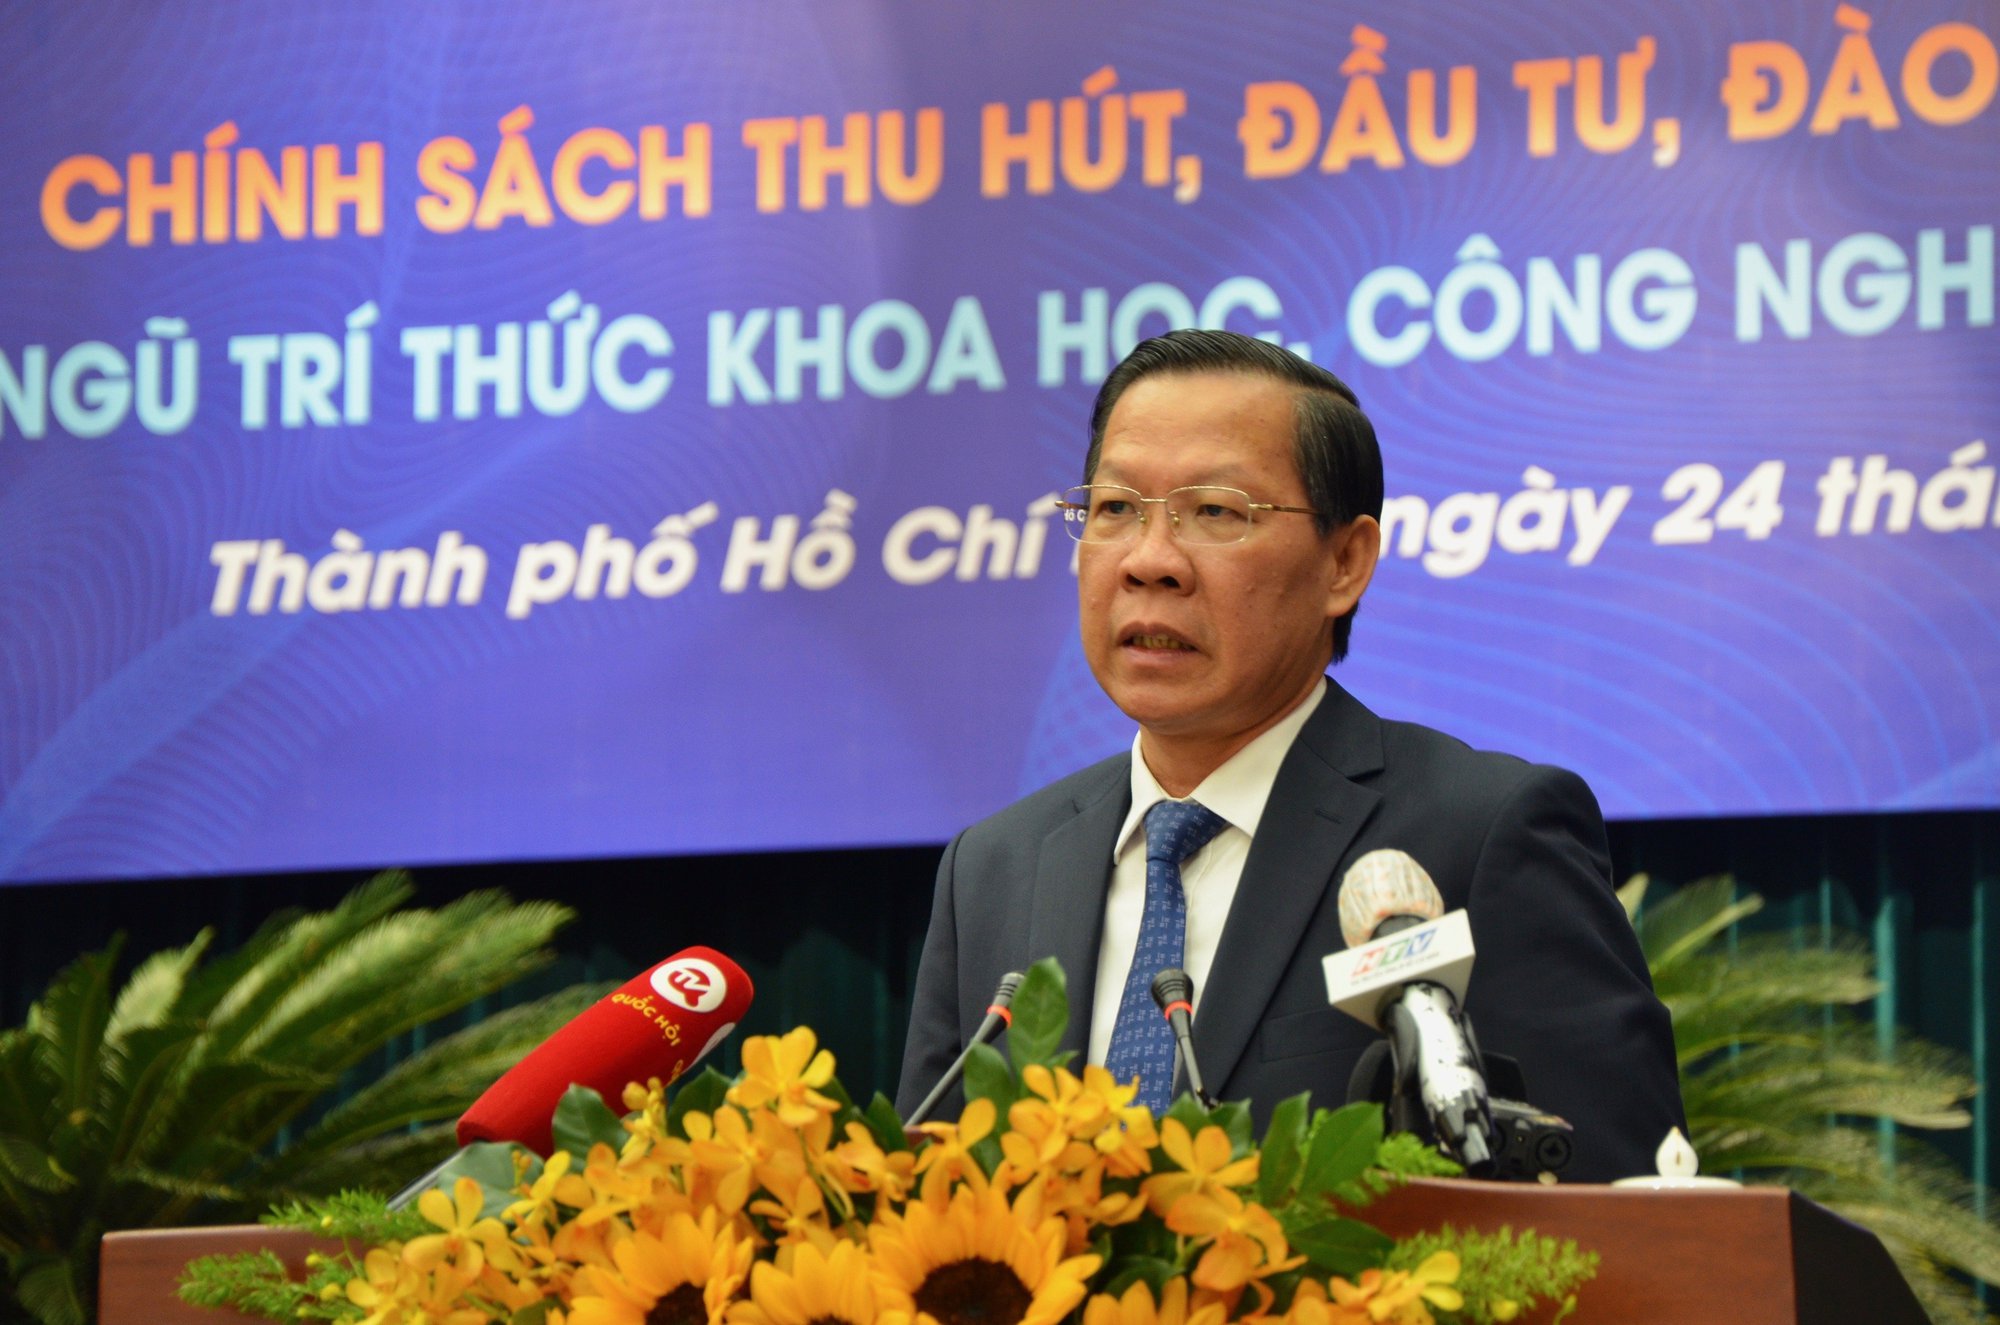 Chủ tịch UBND TP.HCM Phan Văn Mãi: Nhiều chính sách nhưng chỉ thu hút được khoảng 20 trí thức - Ảnh 1.